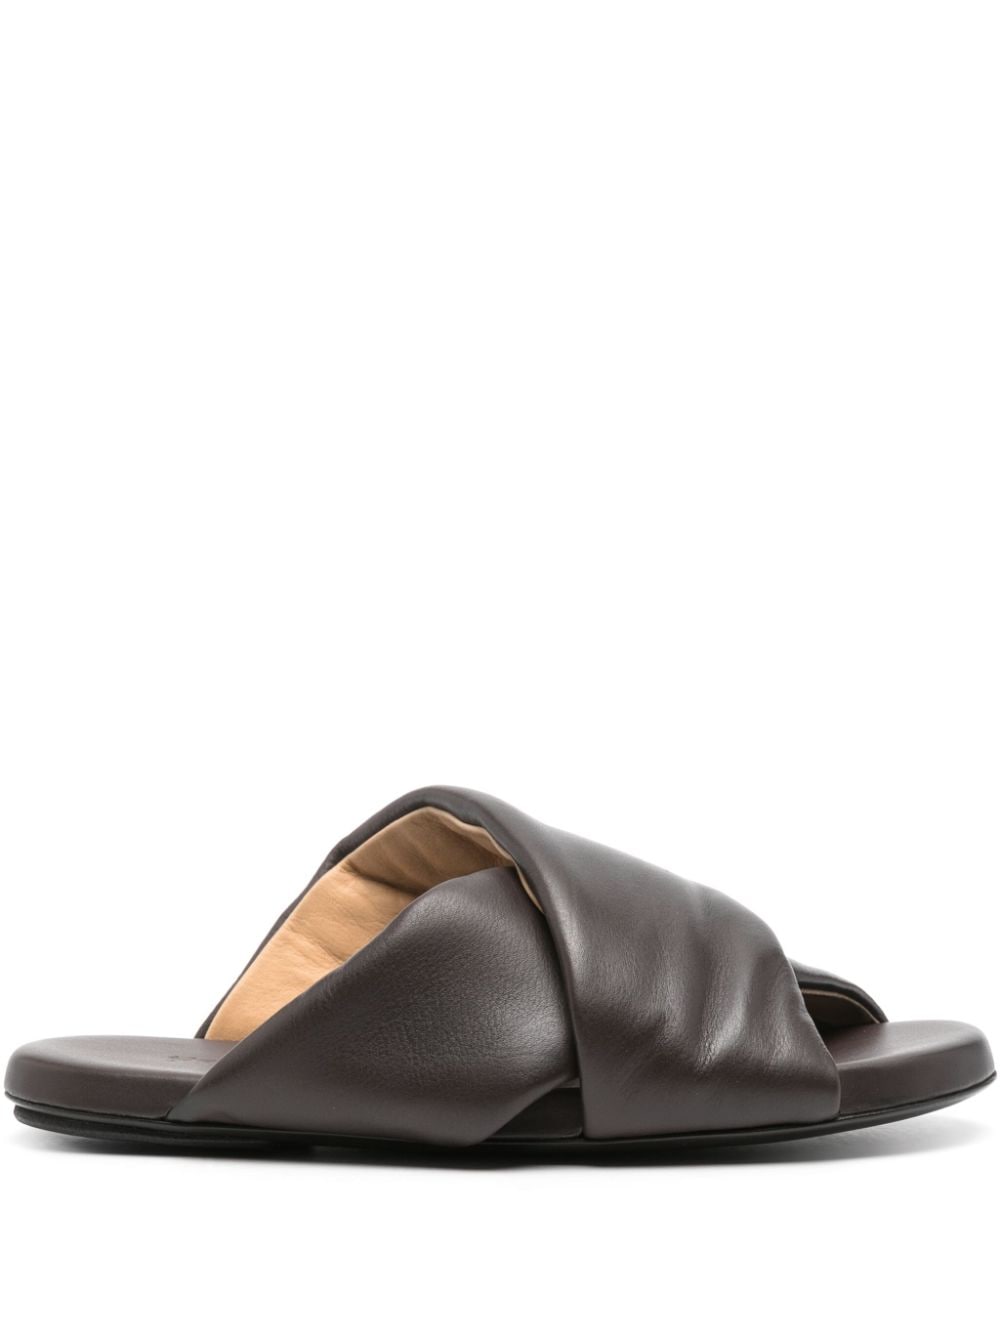 Marsèll Spanciata leather sandals - Black von Marsèll